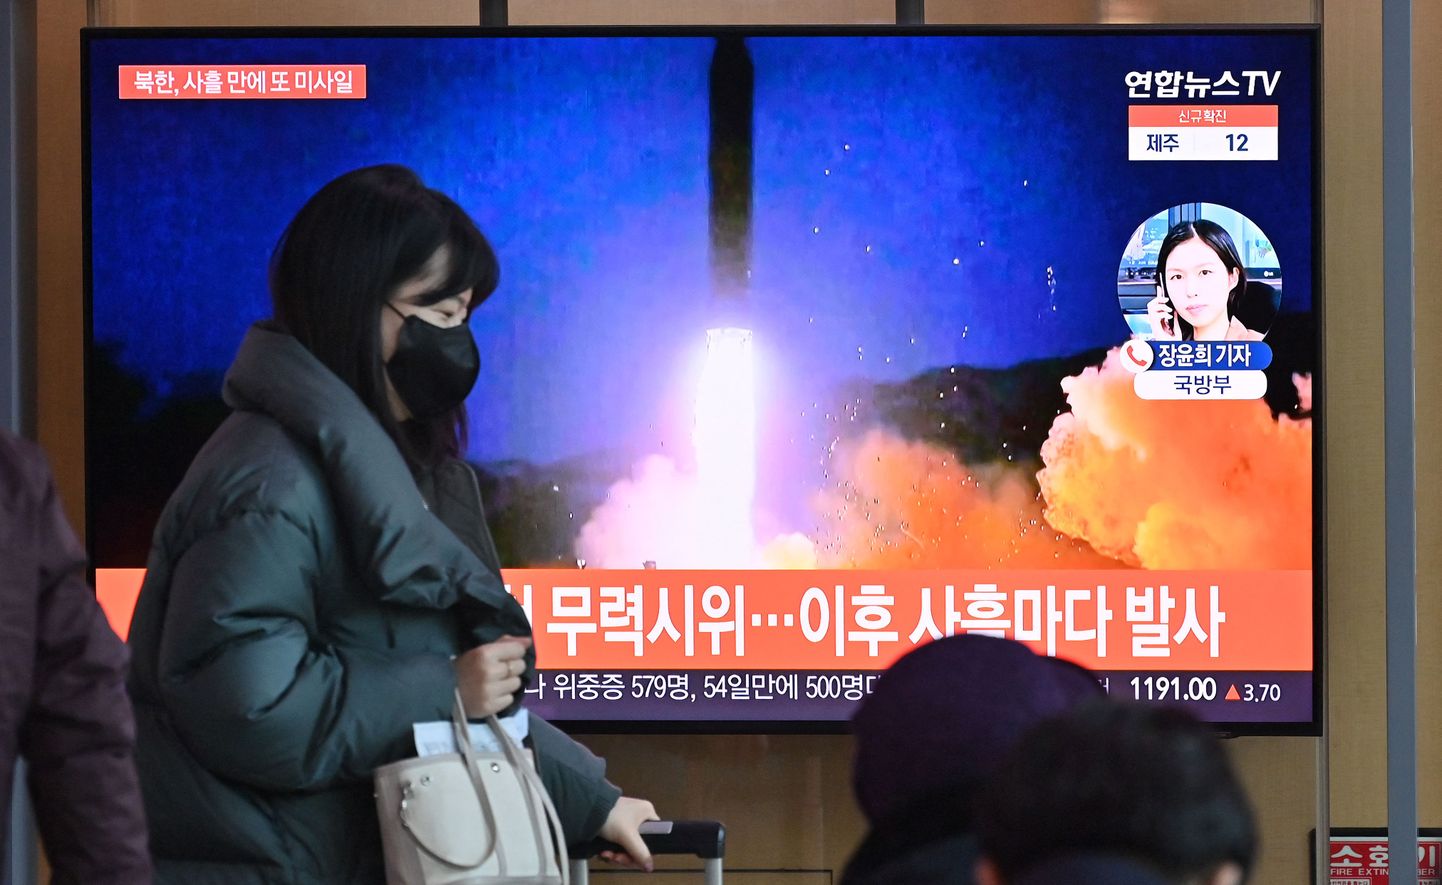 Uudis raketikatsetuse kohta Souli raudteejaama teleekraanidel.